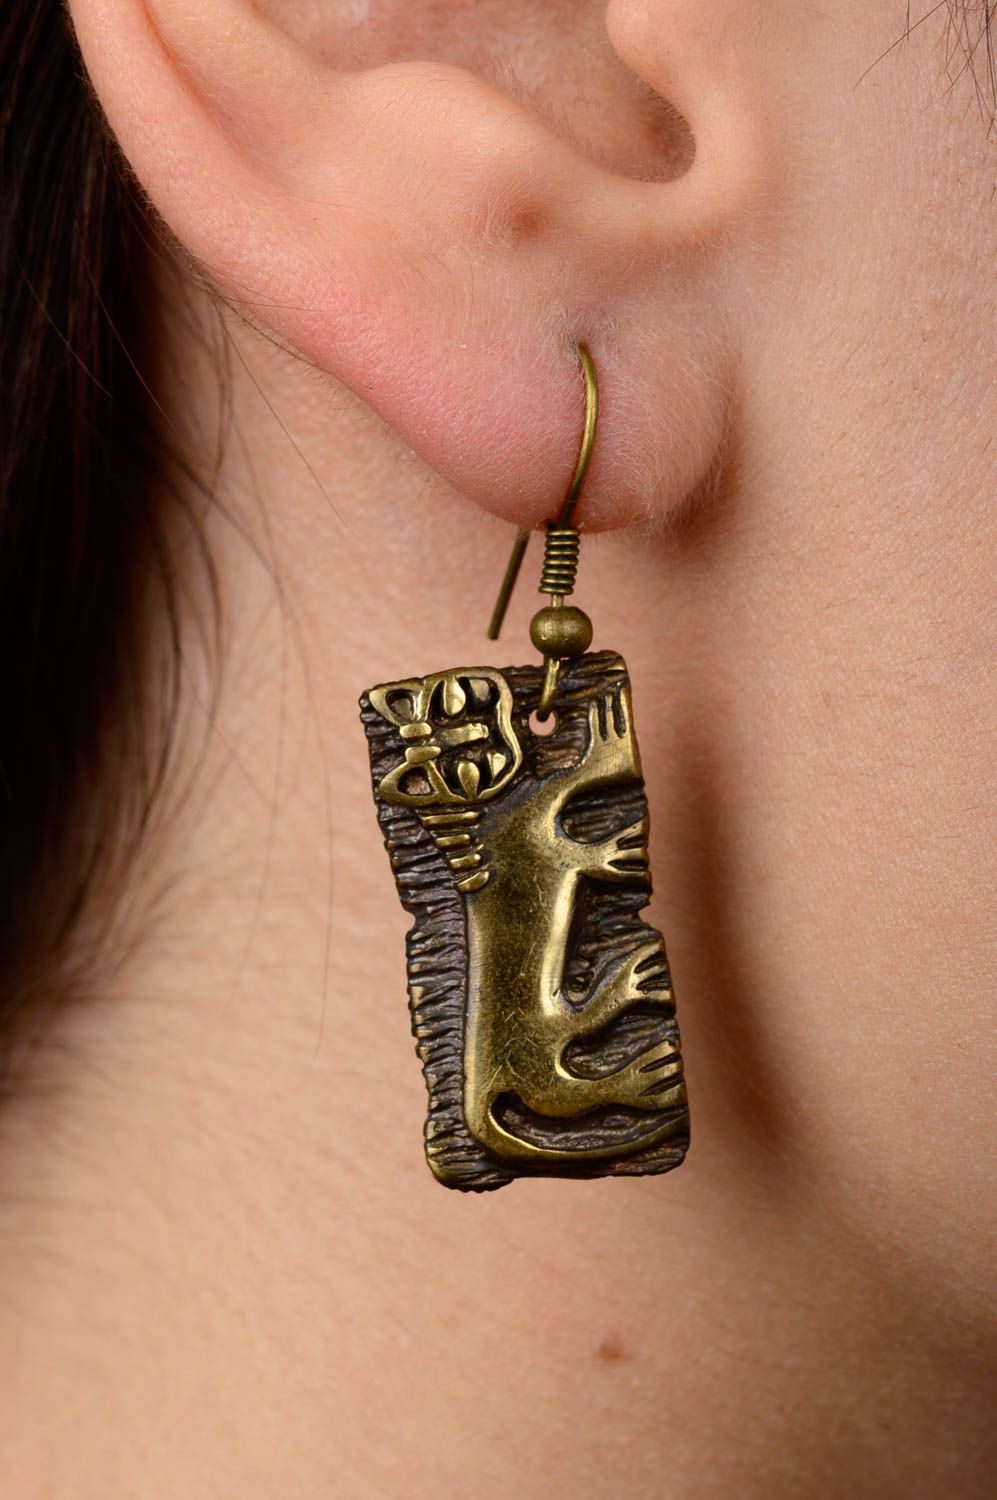 Unusual handmade metal earrings handmade accessories cool jewelry designs photo 2